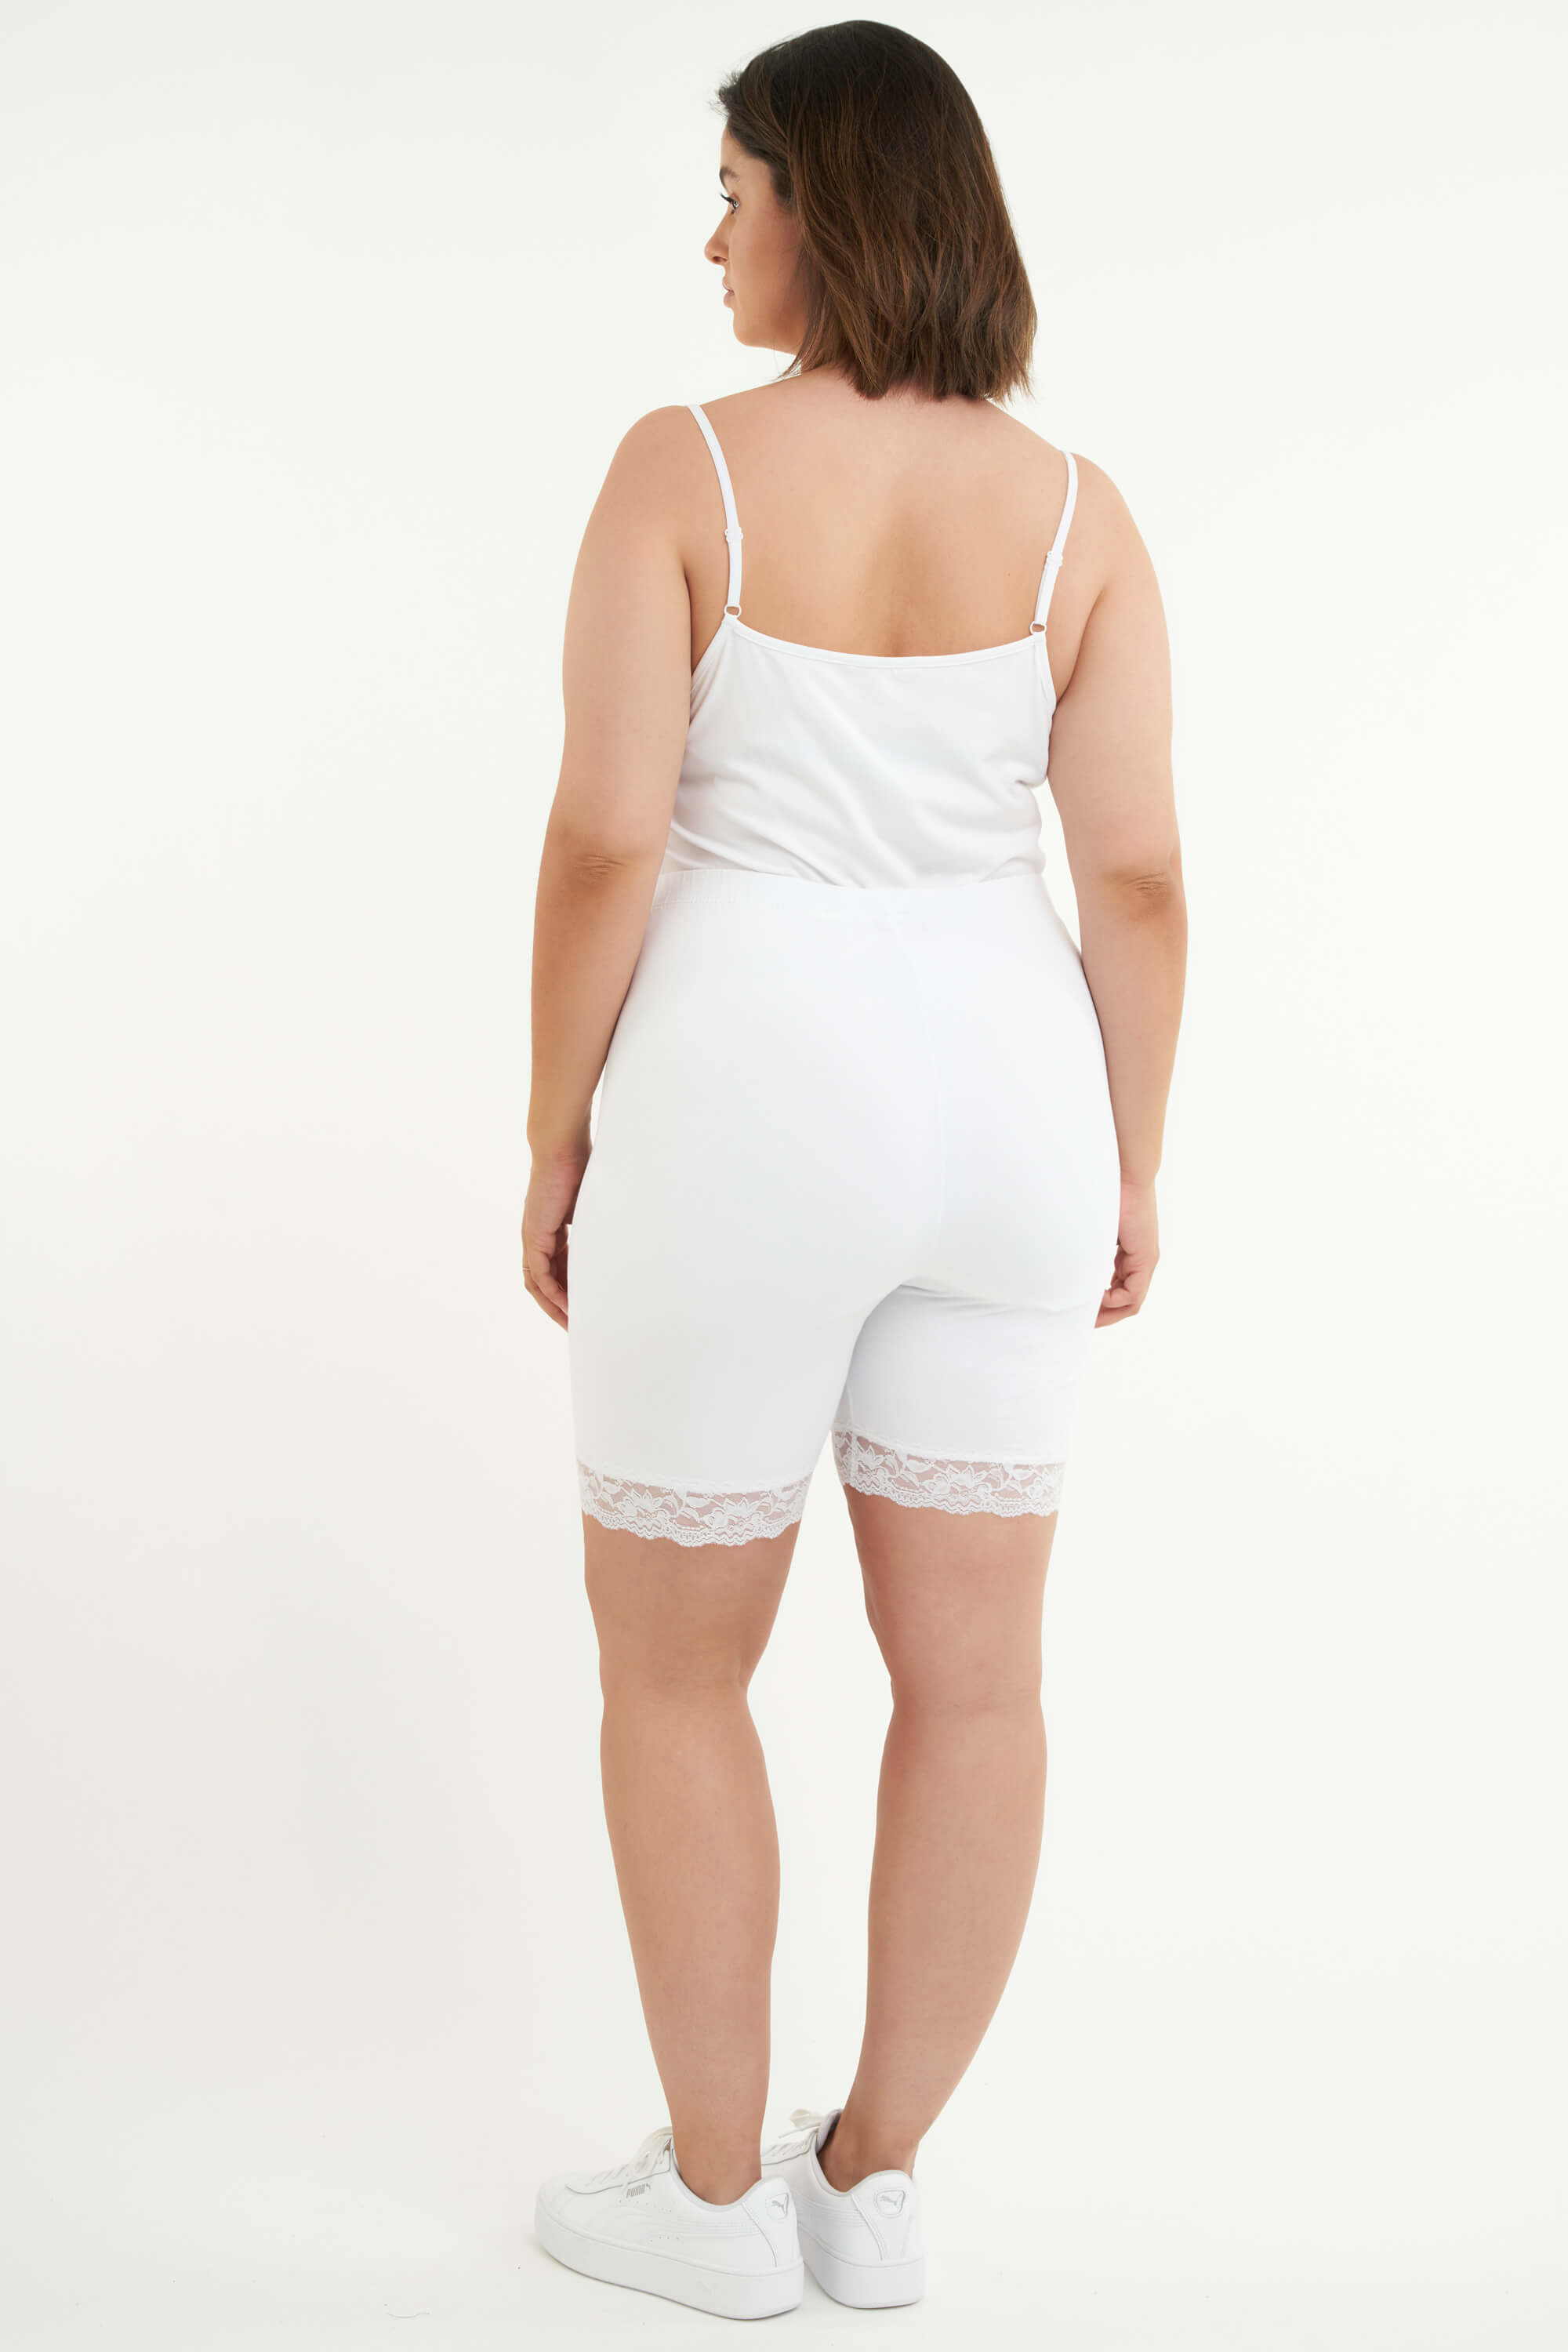 Landgoed Doe voorzichtig Goed opgeleid Dames Korte legging met kant Wit bij MS Mode®